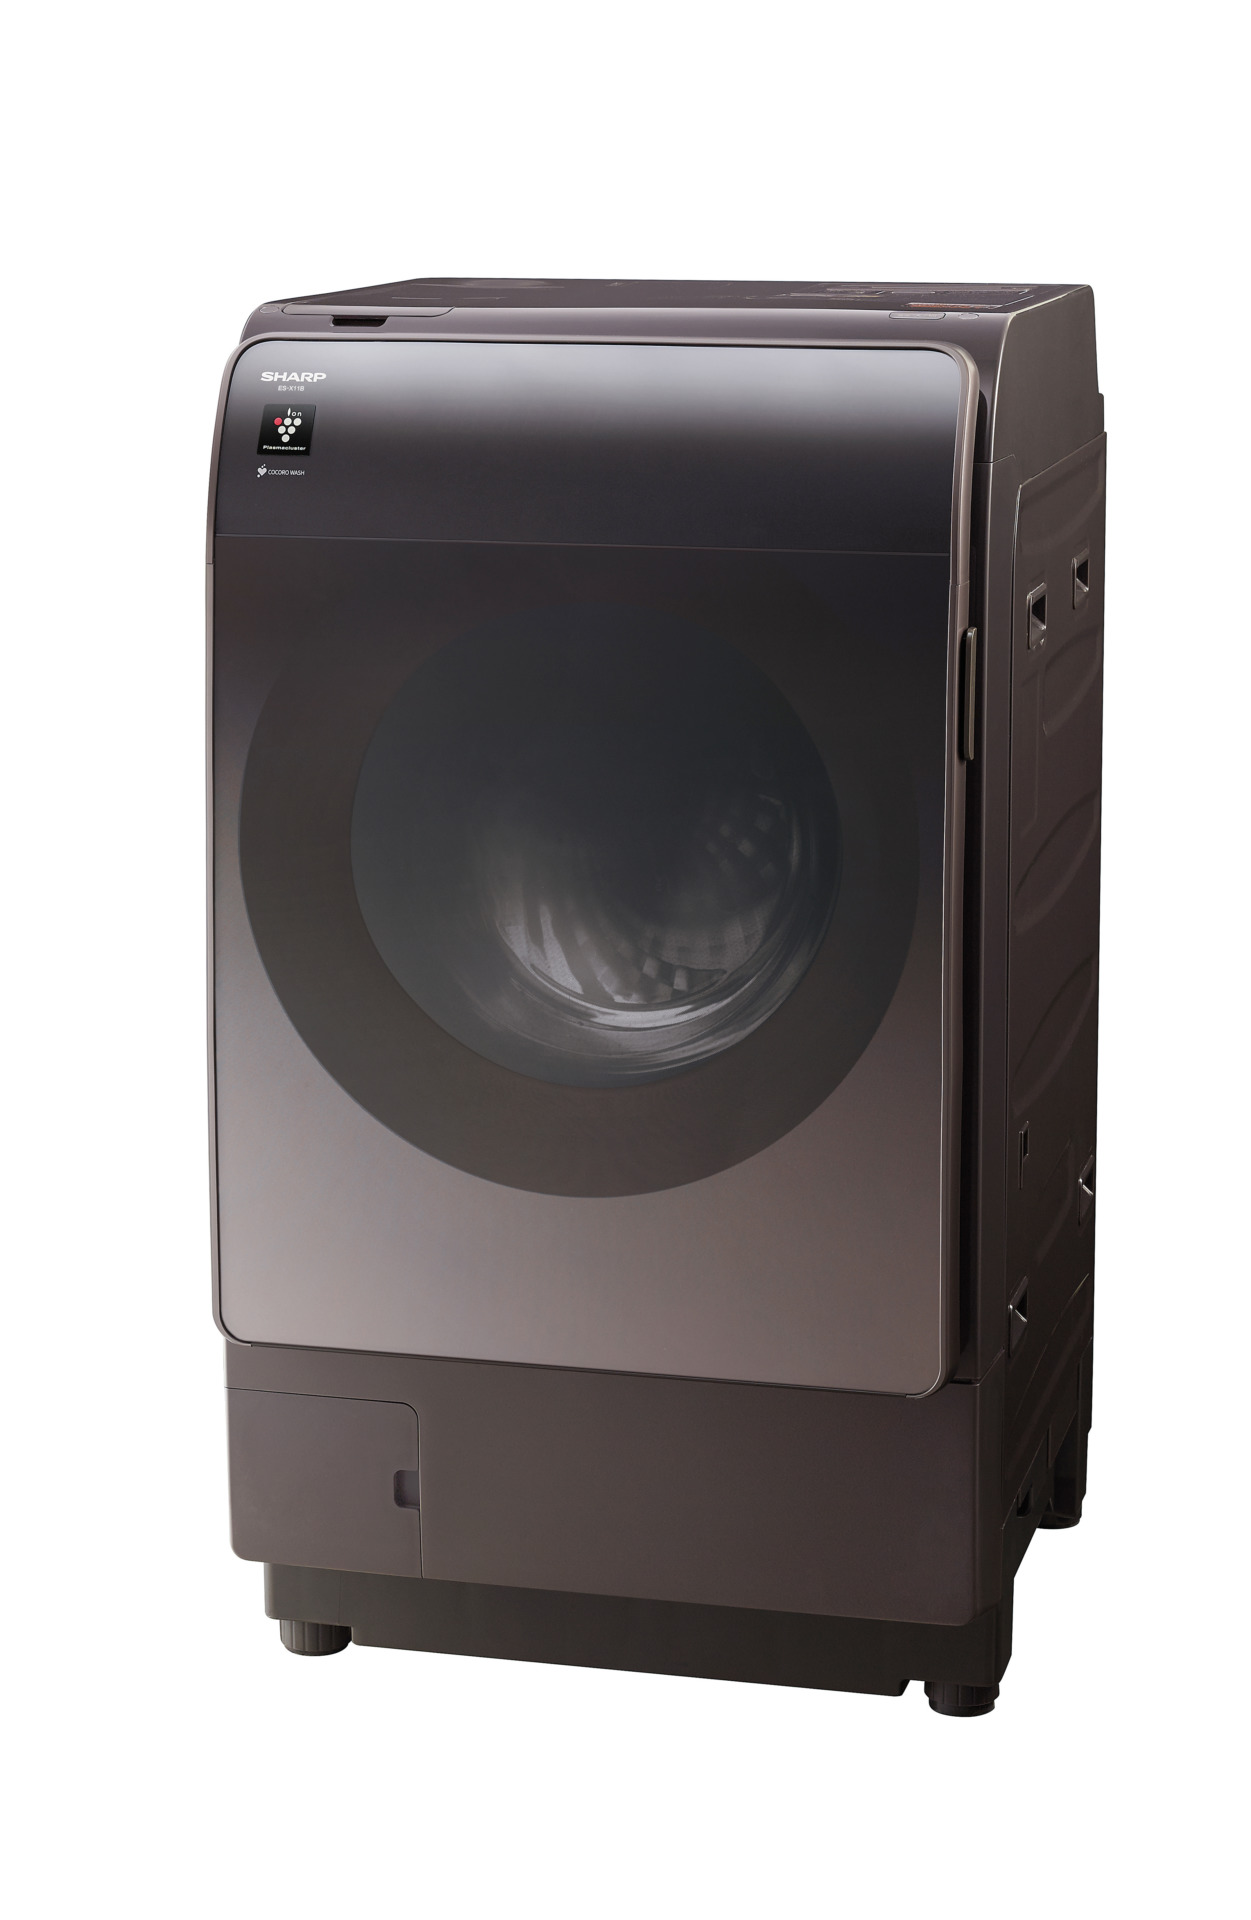 シャープ「ドラム式洗濯乾燥機 ES-X11B-TL」オープン価格